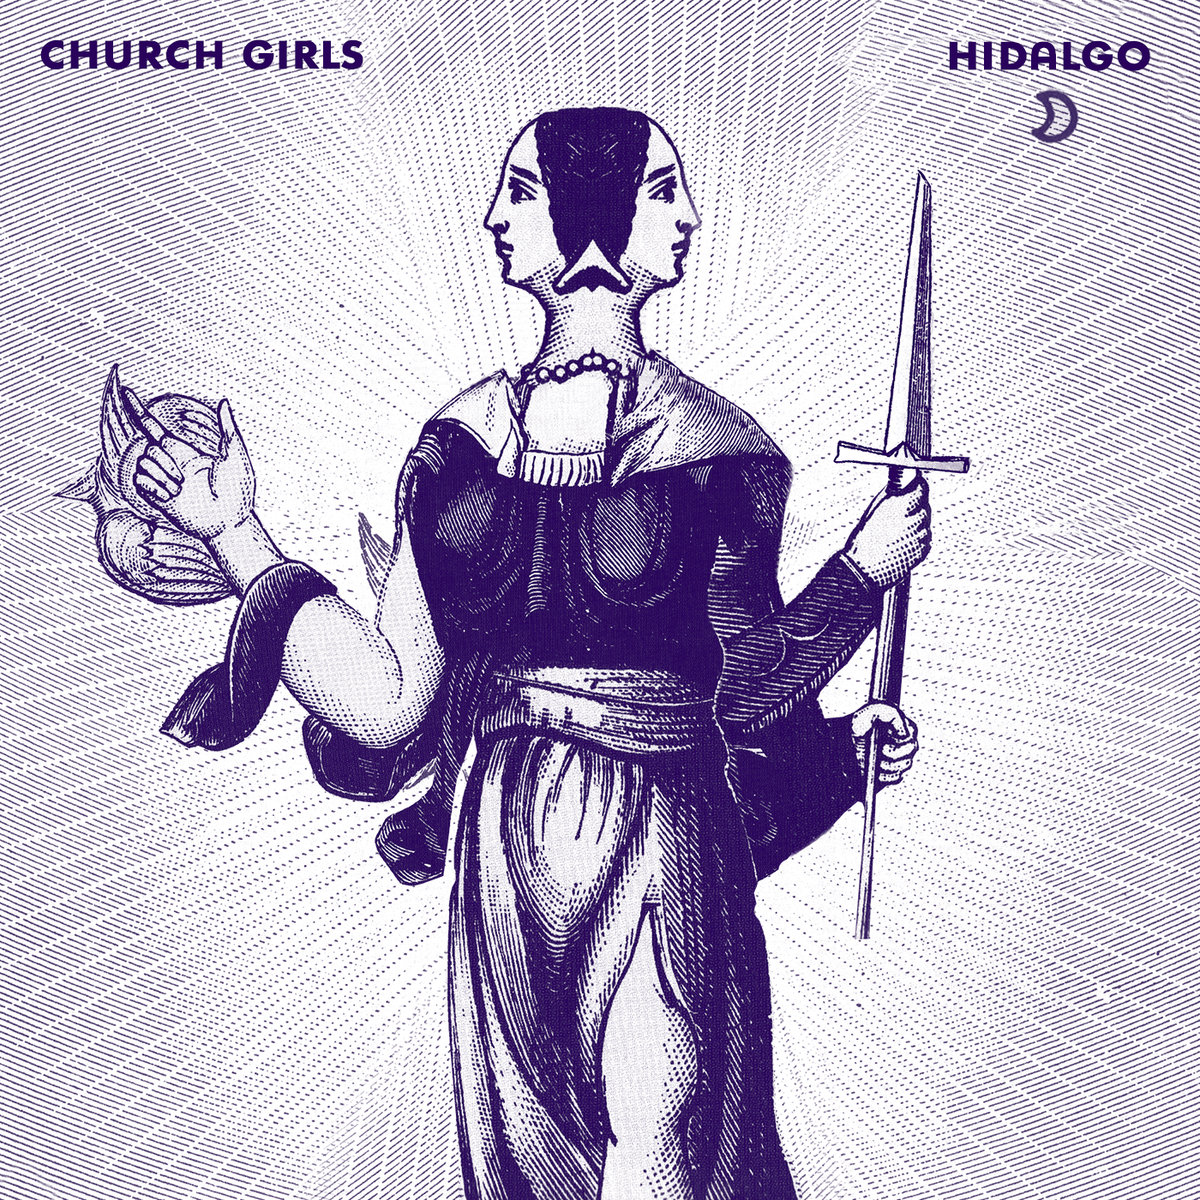 Hidalgo - Church Girls